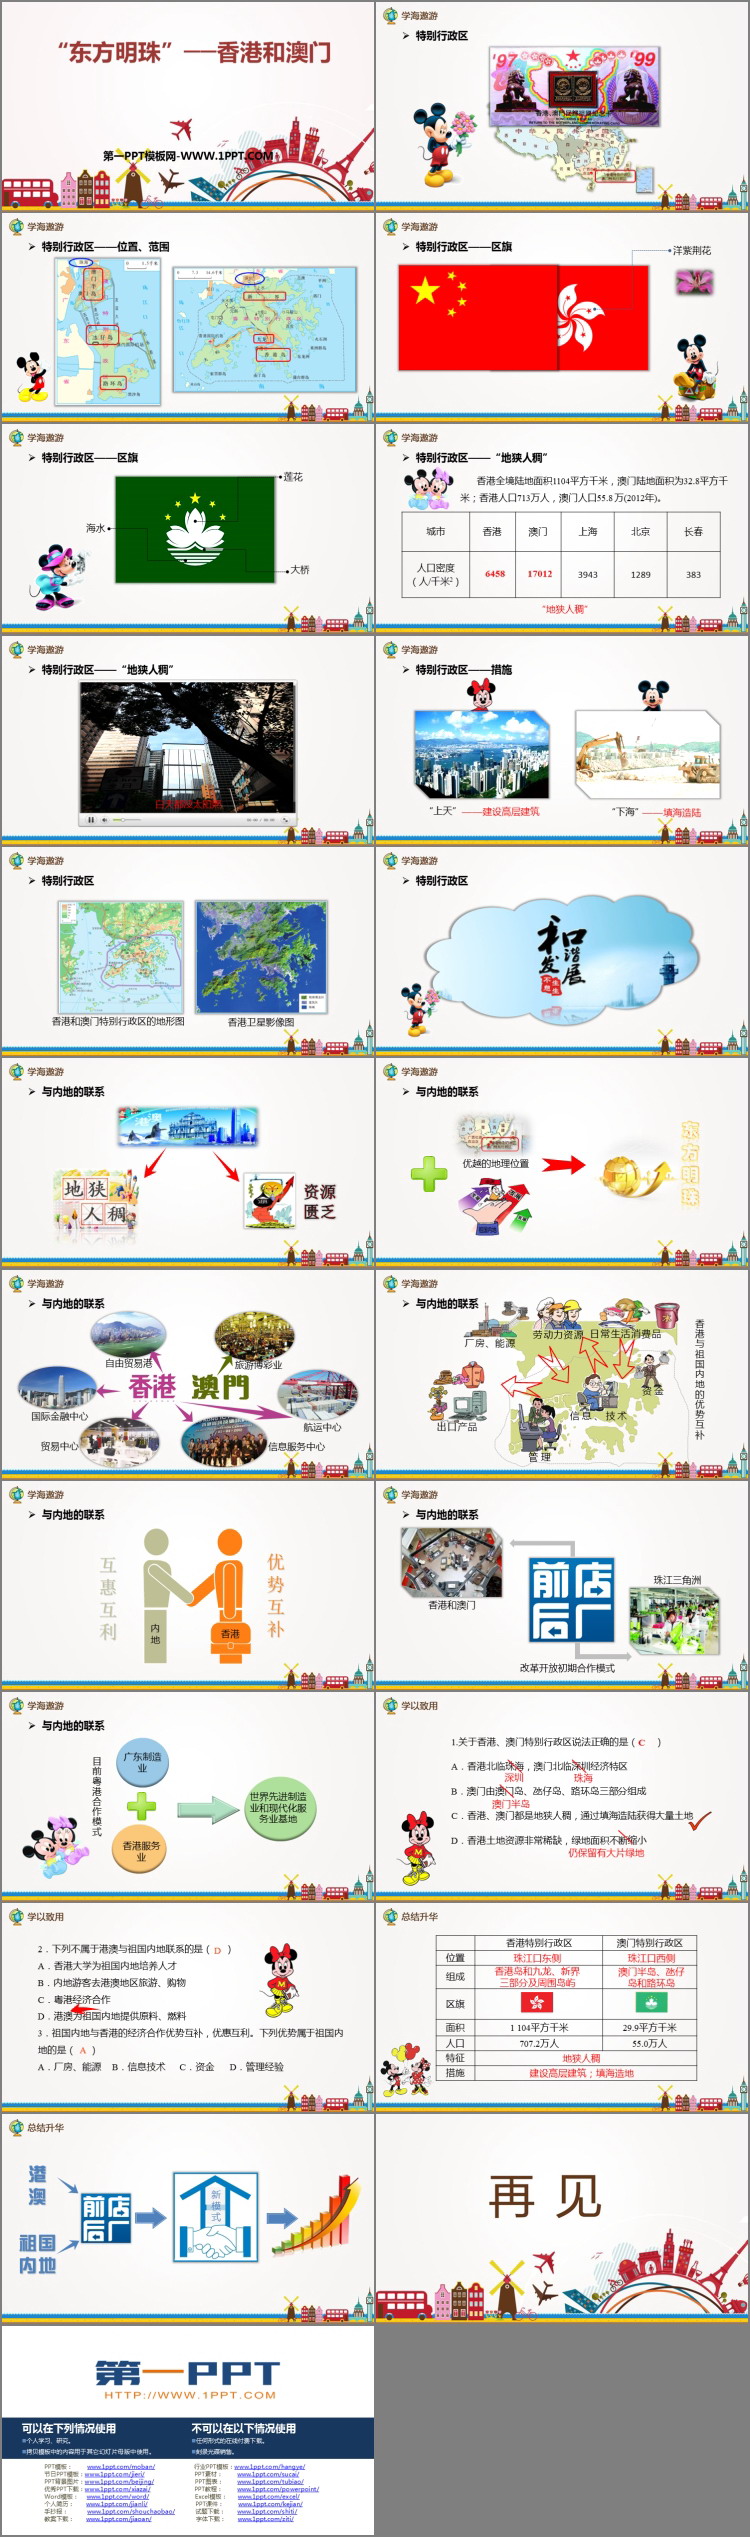 《东方明珠香港和澳门》南方地区PPT下载-预览图02